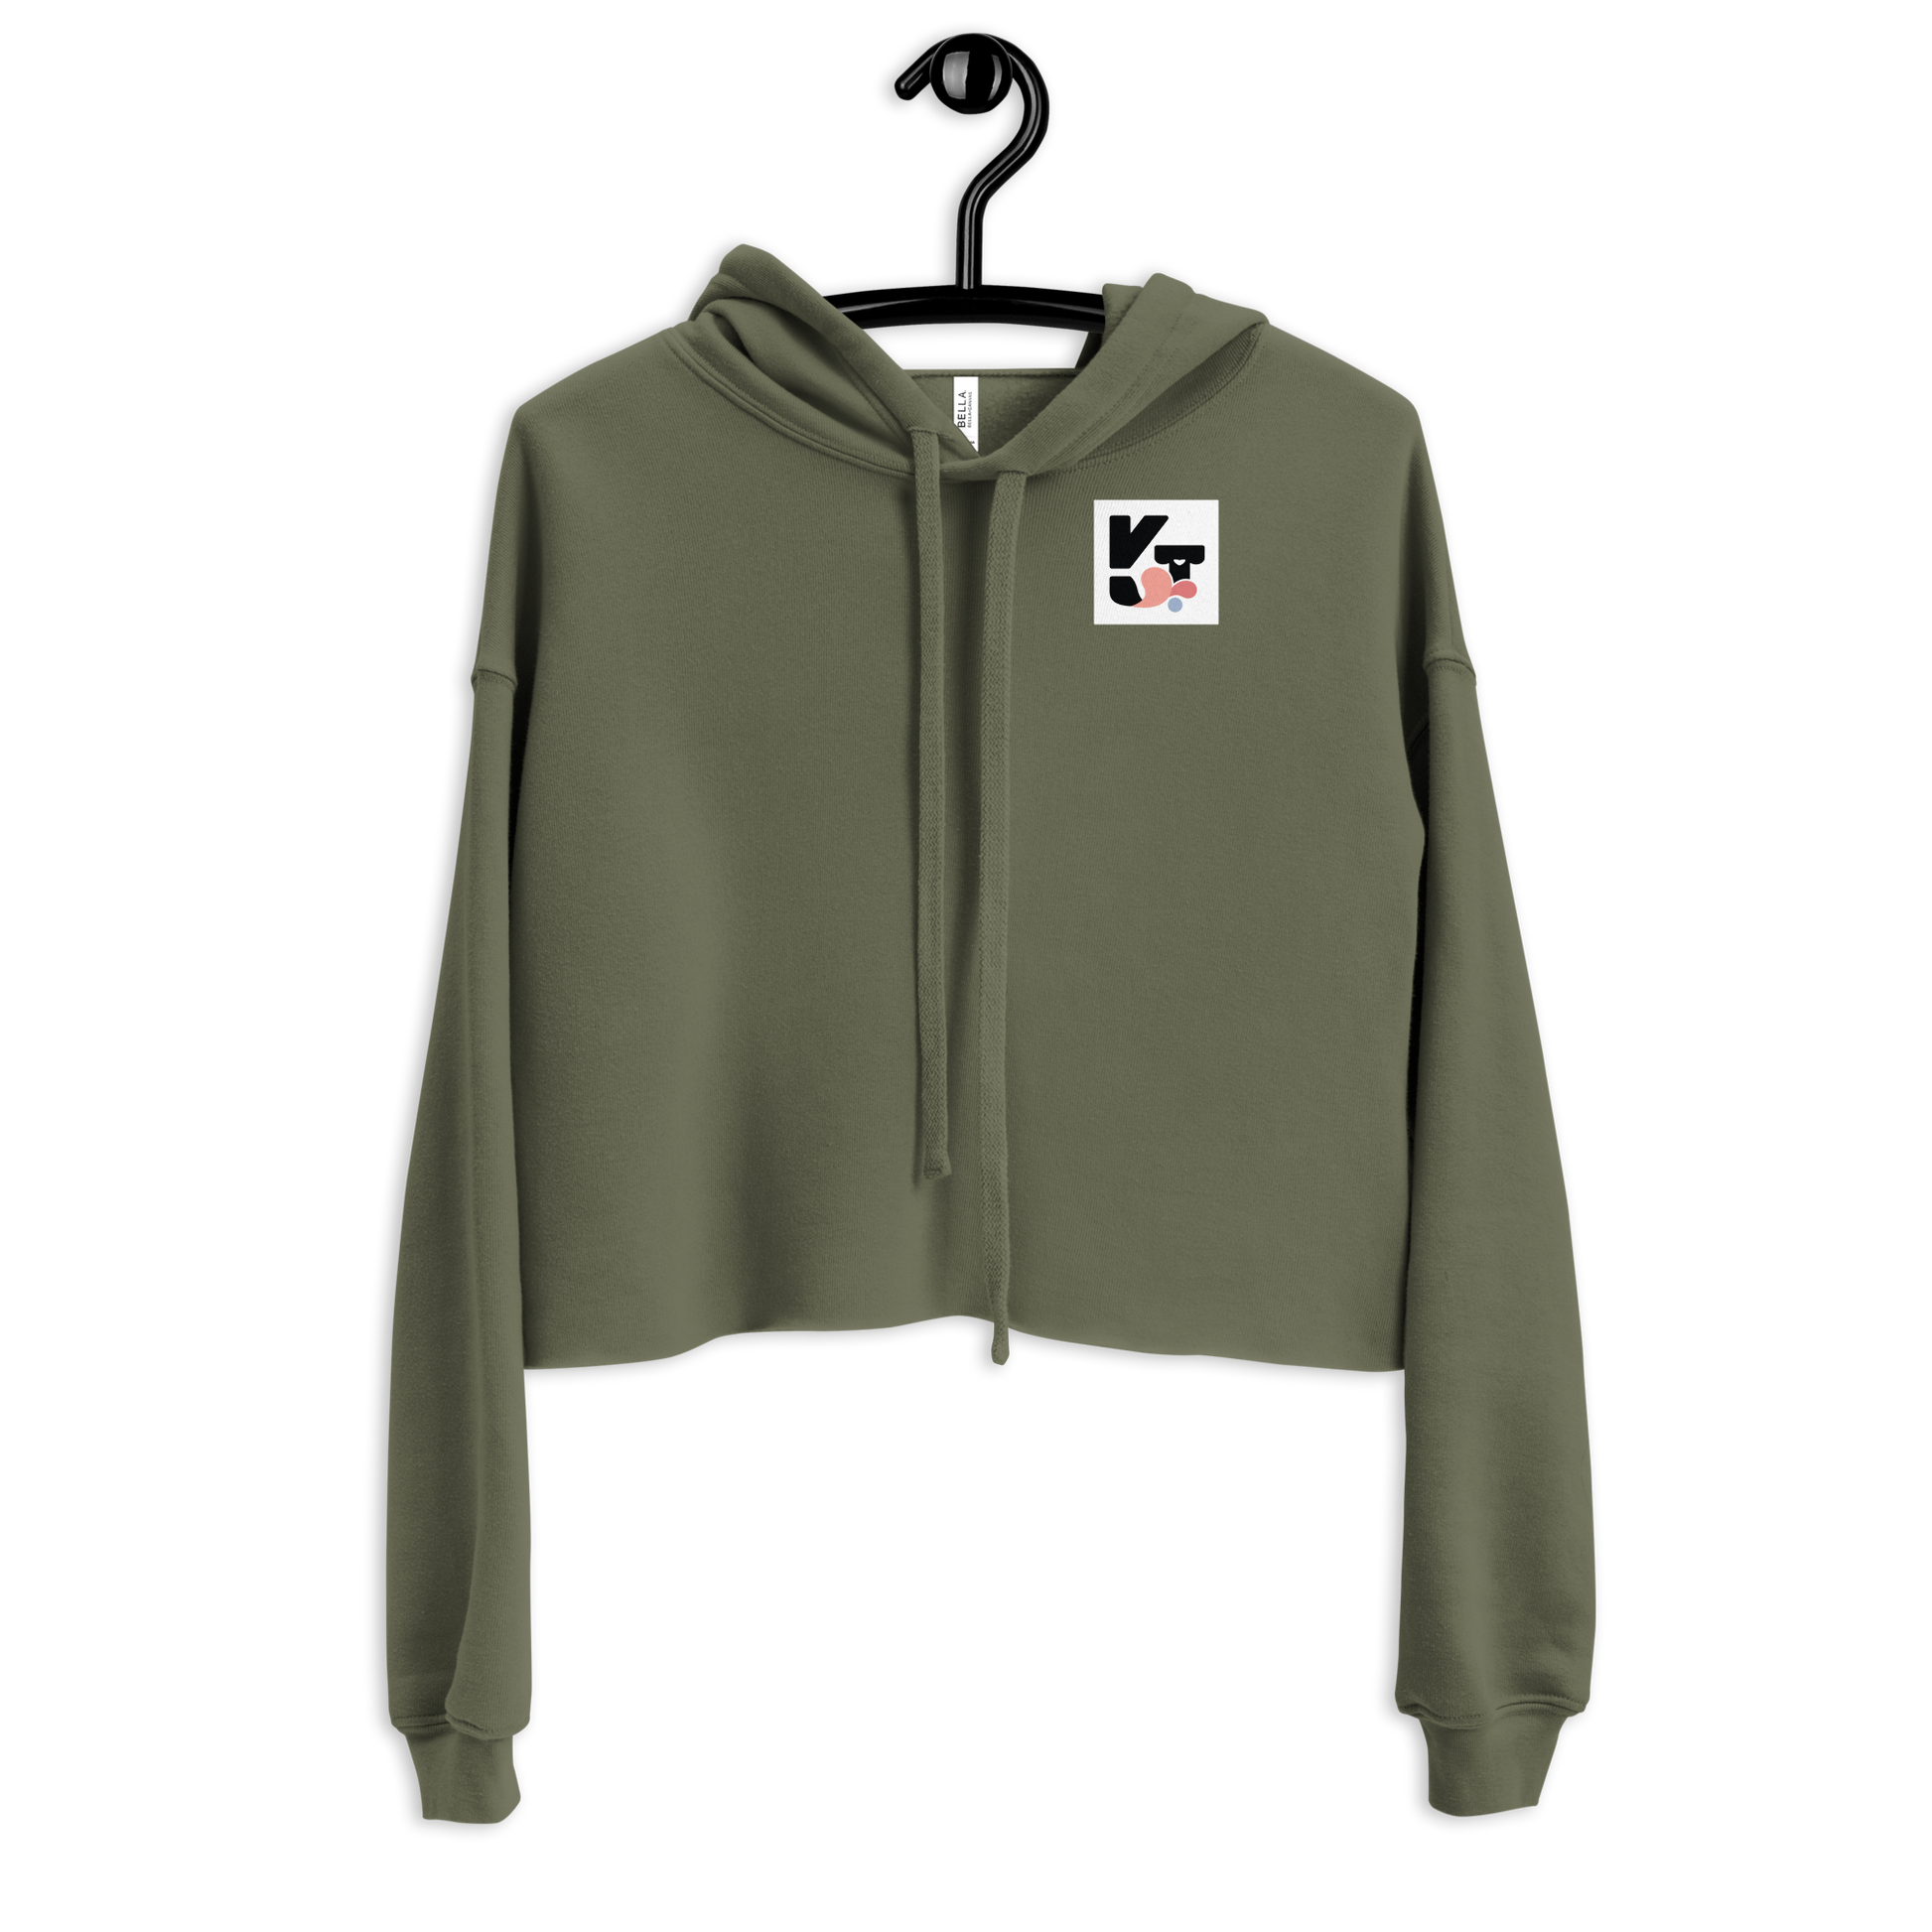 Kurzer Kapuzen-Sweatshirt "Small Things Shelties" in olivgrüner Farbe mit Markenlogo von Klexgetier